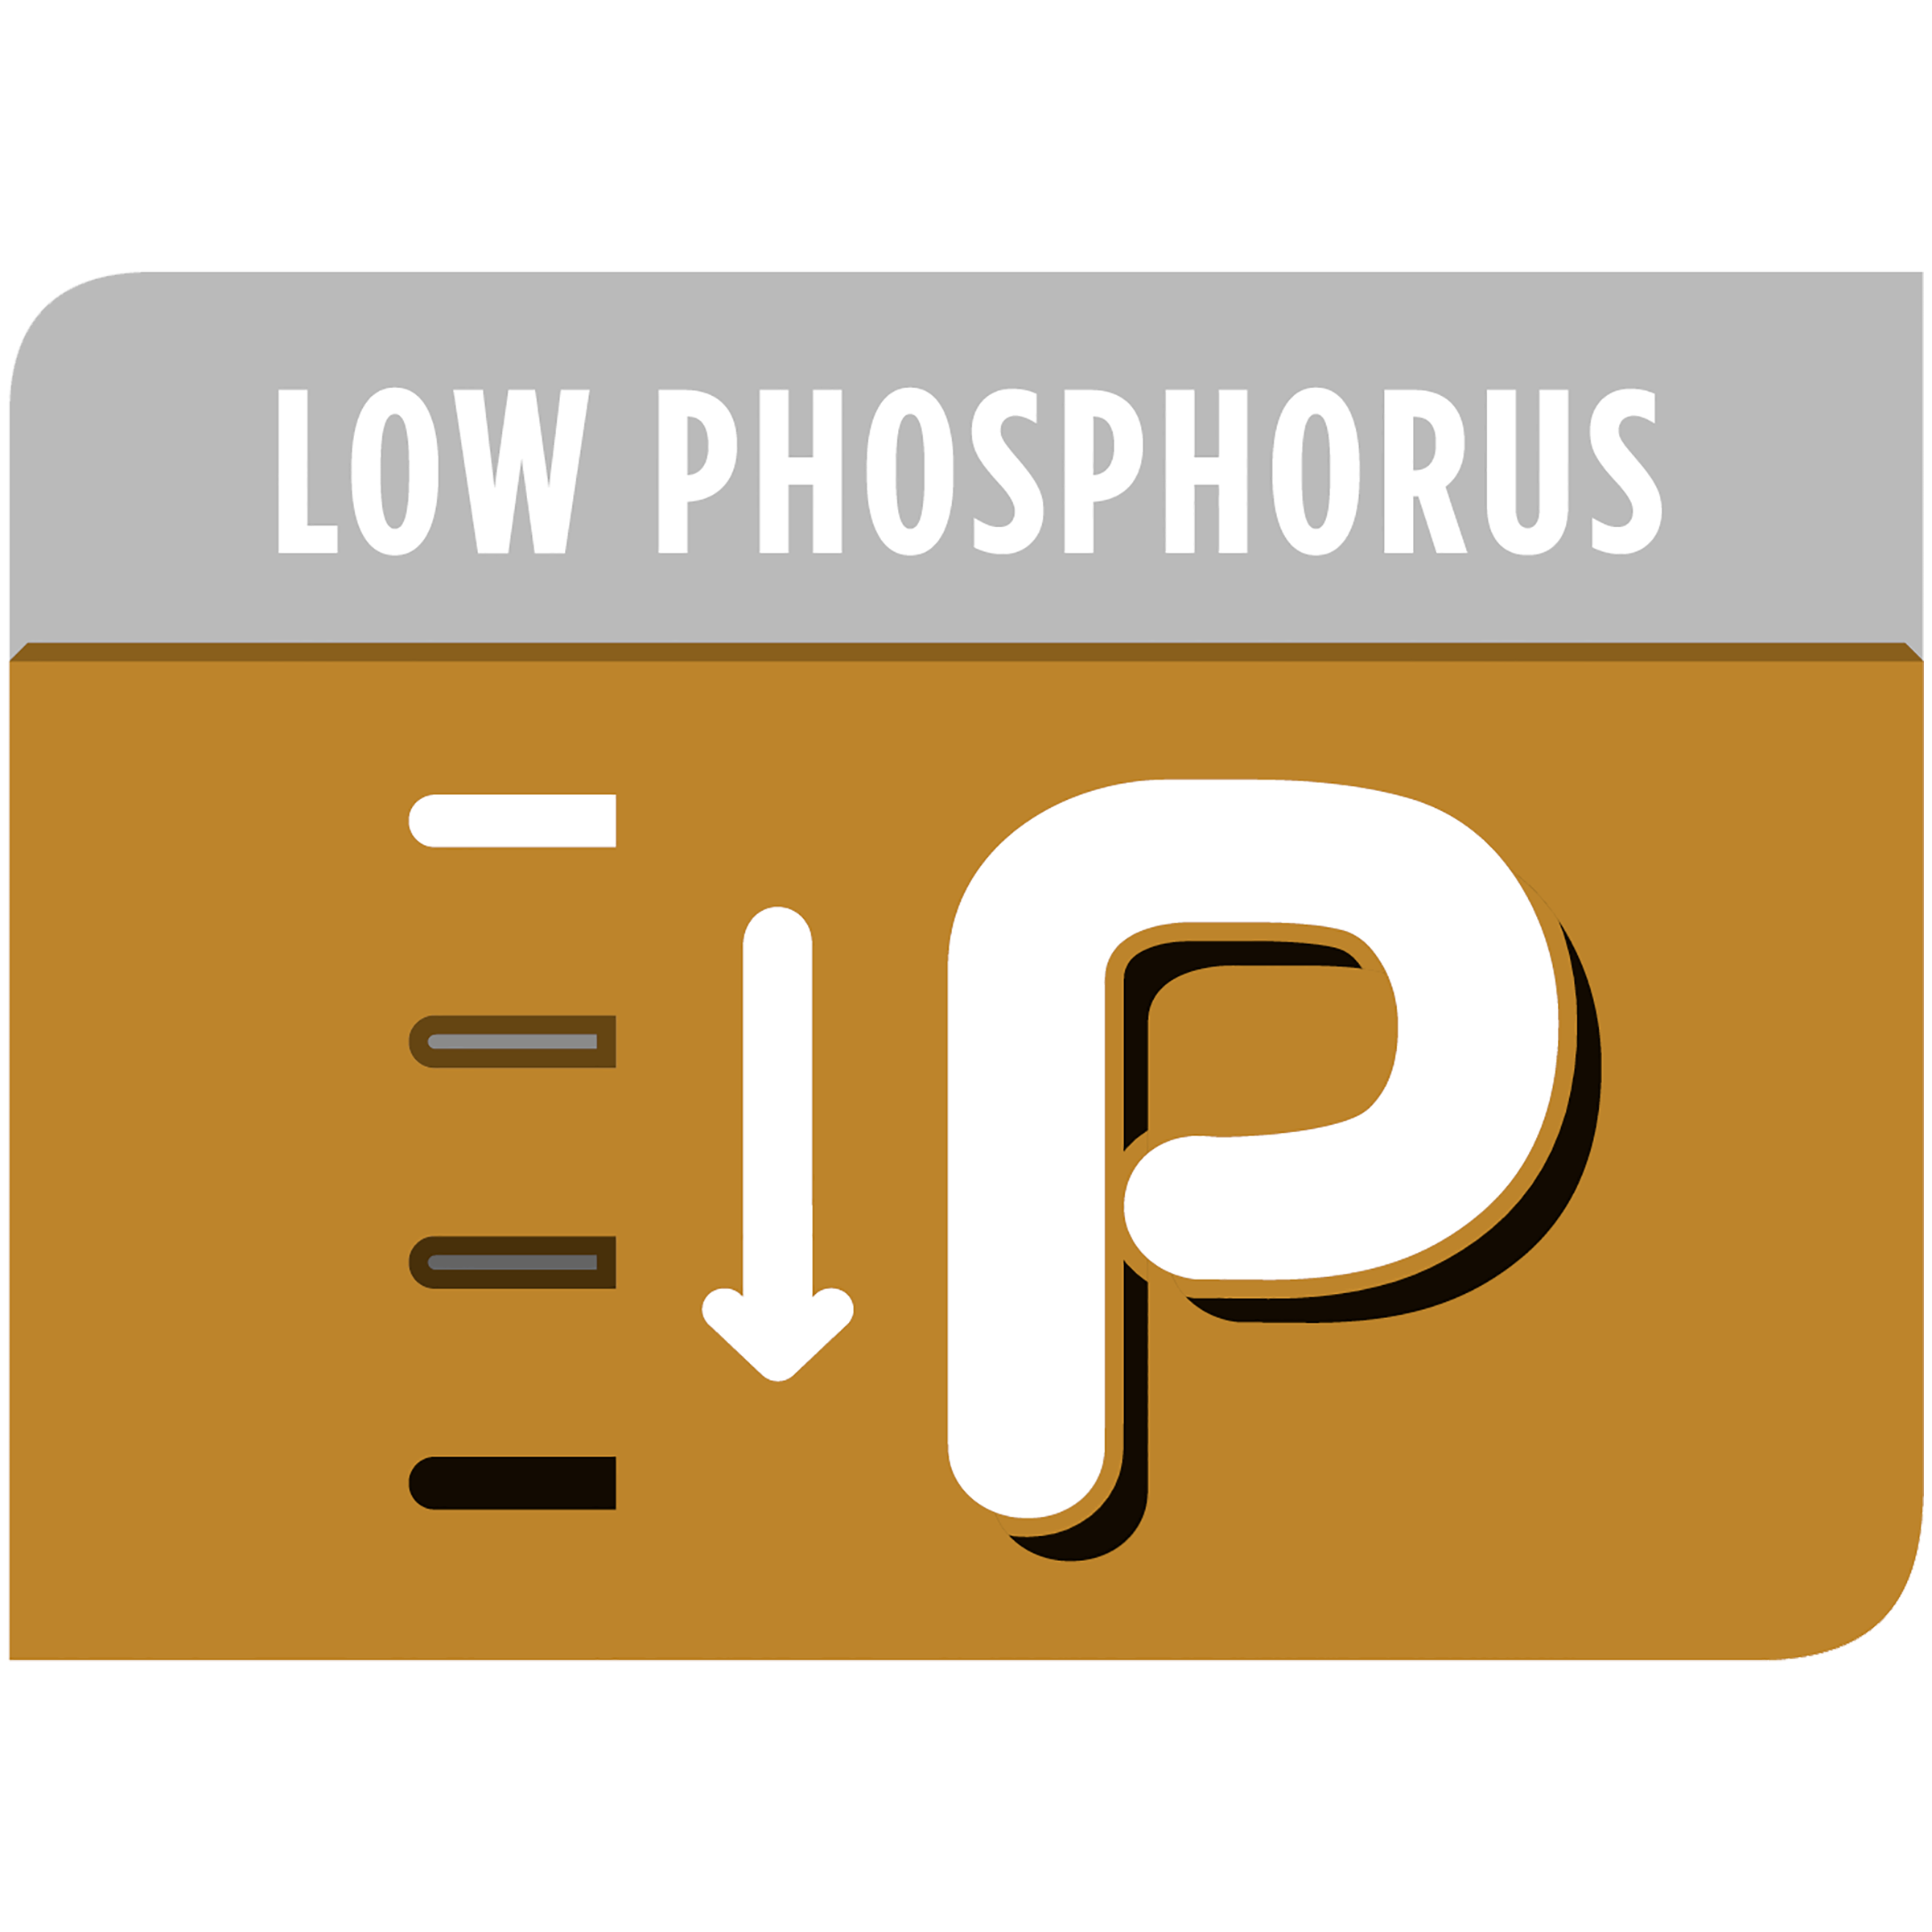 NF Ограниченное содержание фосфора в рационе